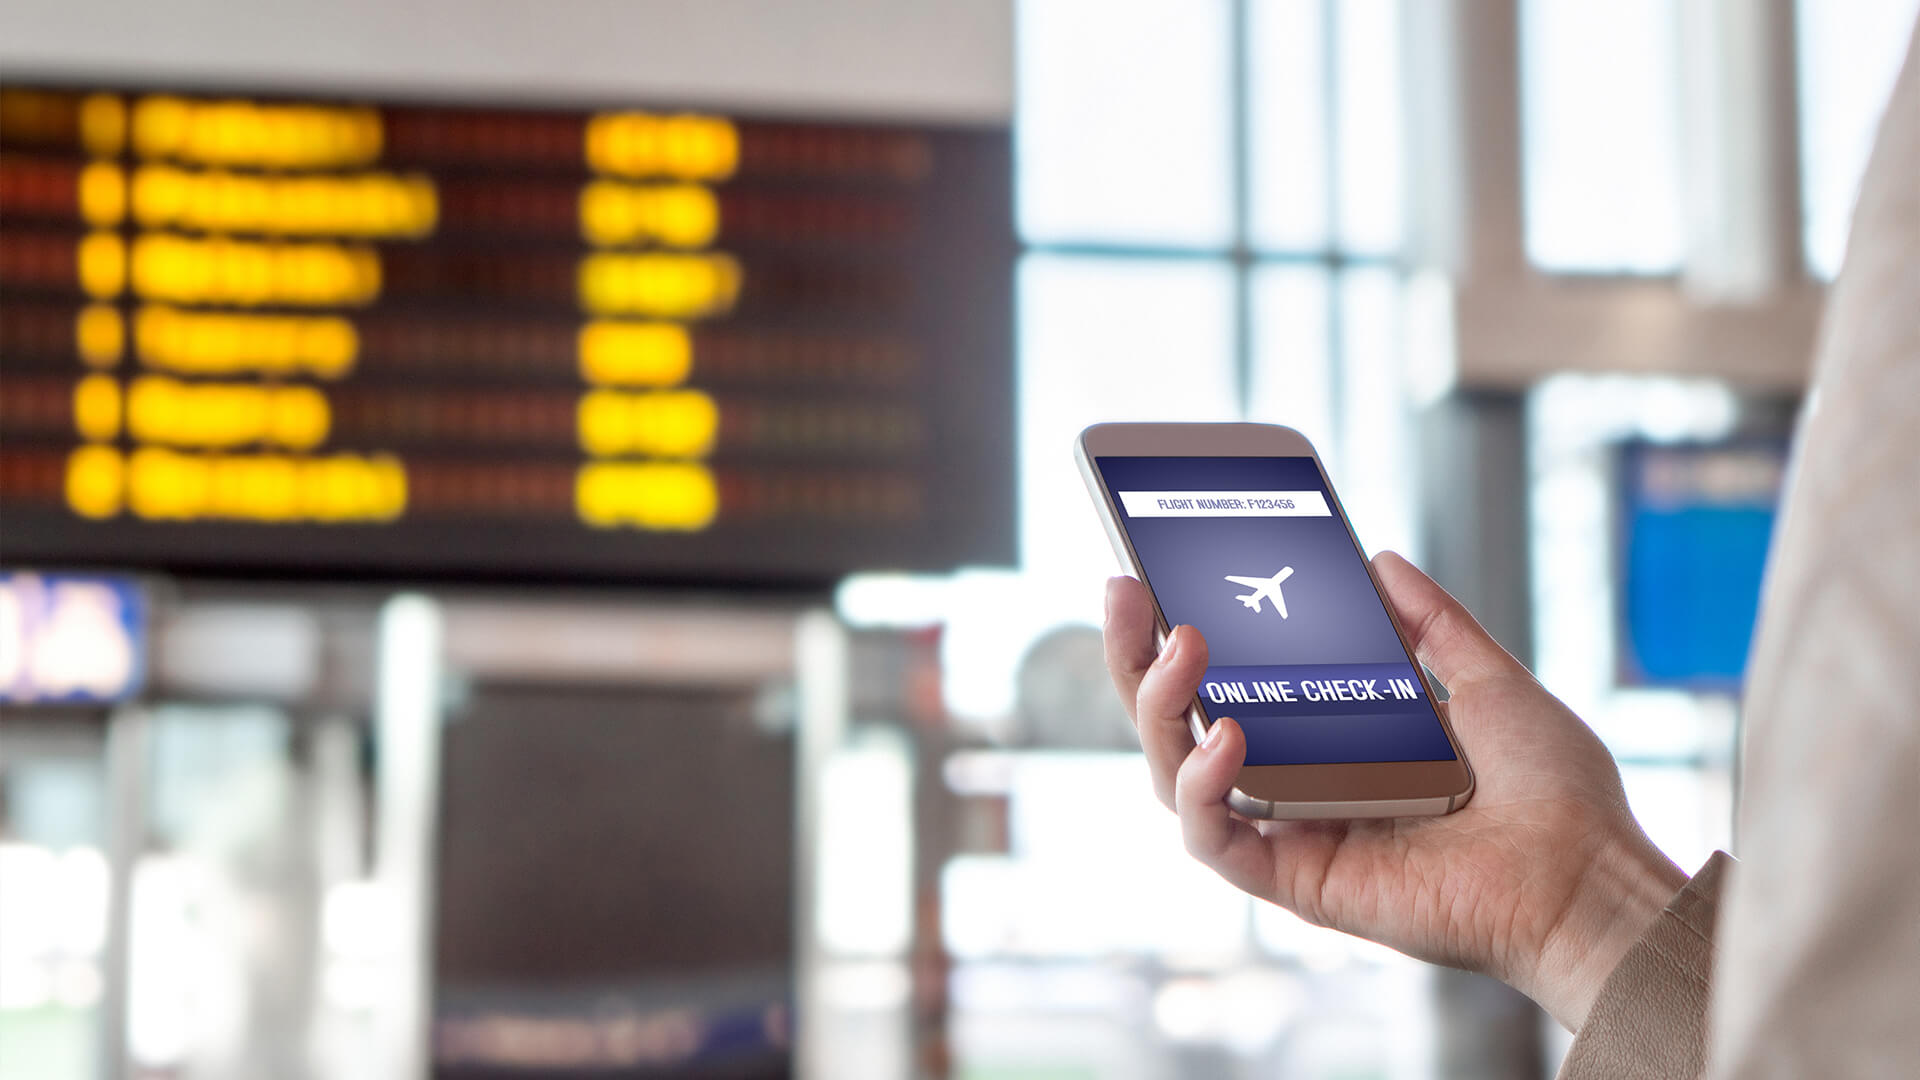 hanse business travel travel tools mann steht mit handy und online checkin in terminal